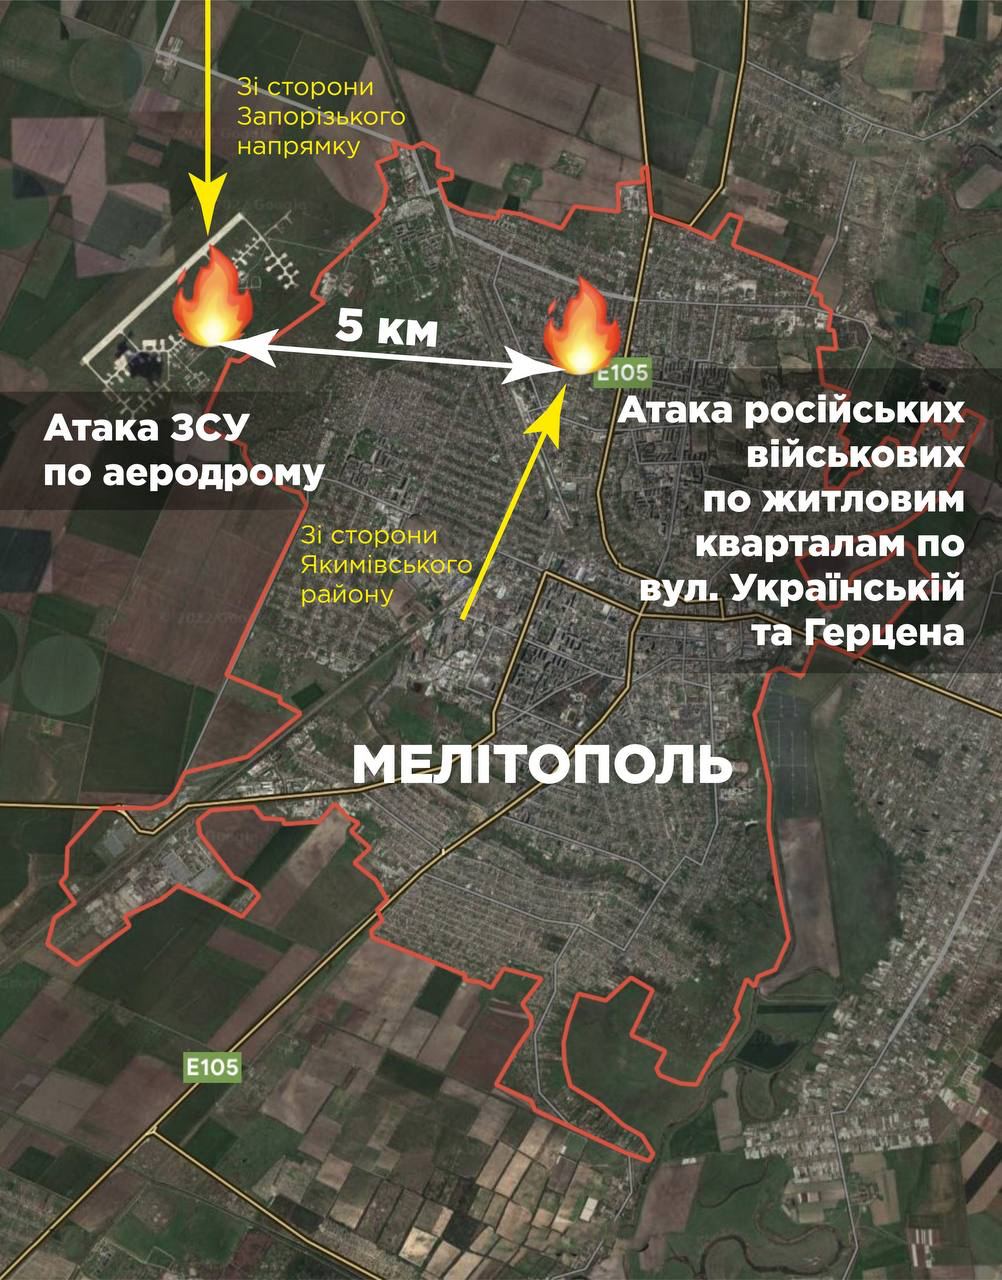 Российские оккупанты обстреляли Мелитополь после удачной атаки ВСУ на их базу, - мэр Иван Федоров